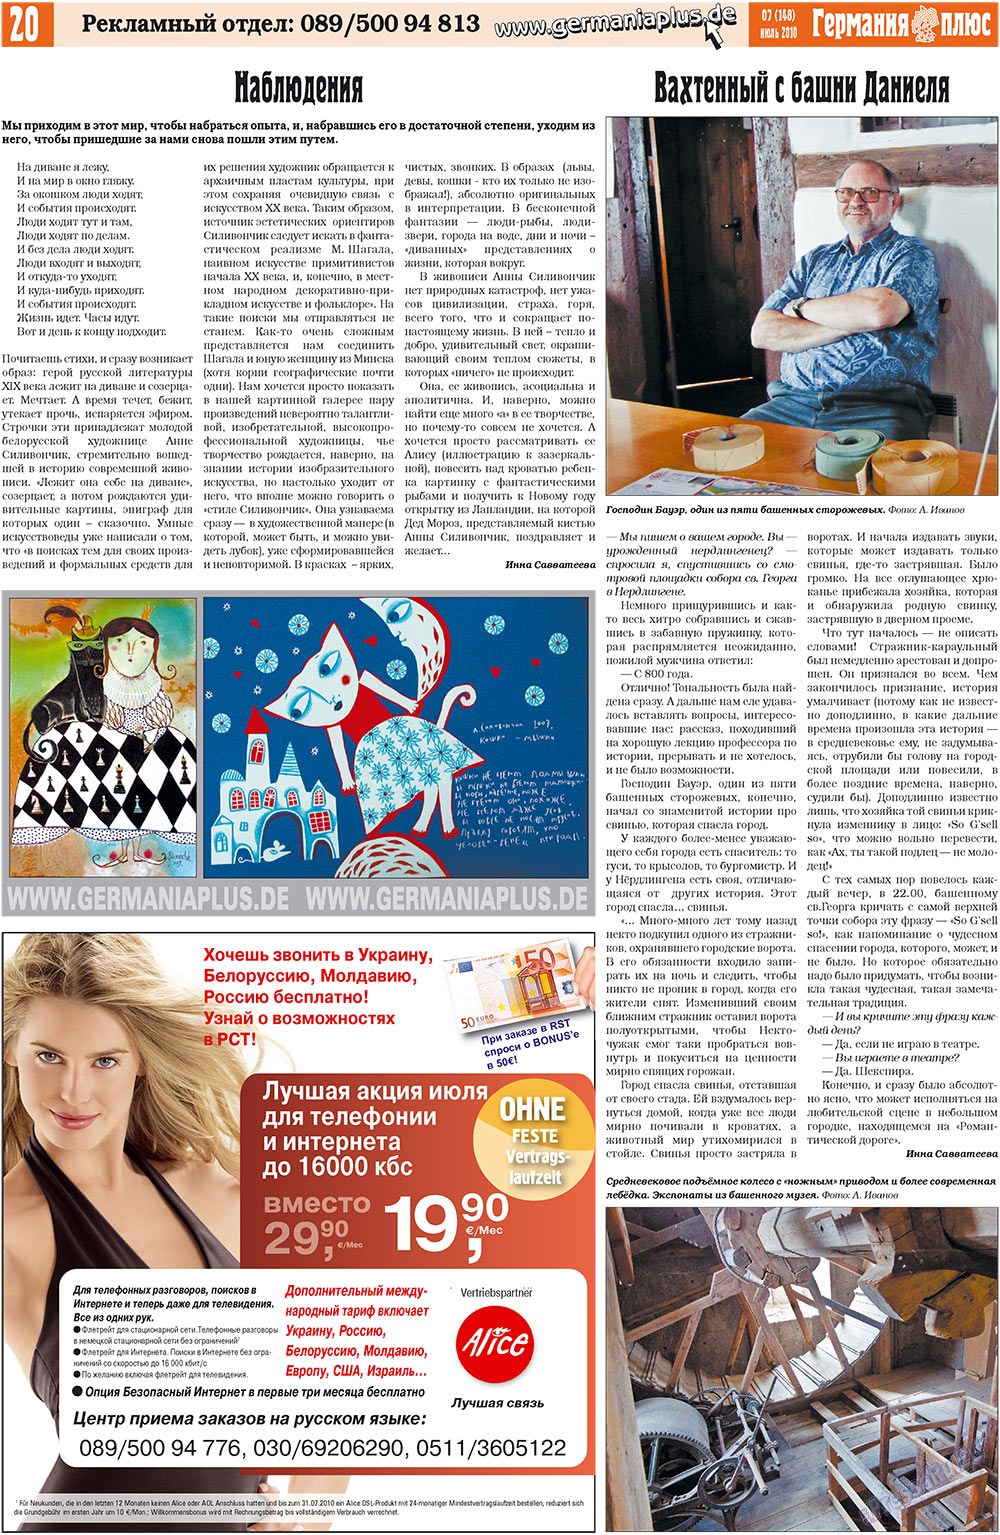 Германия плюс (газета). 2010 год, номер 7, стр. 20